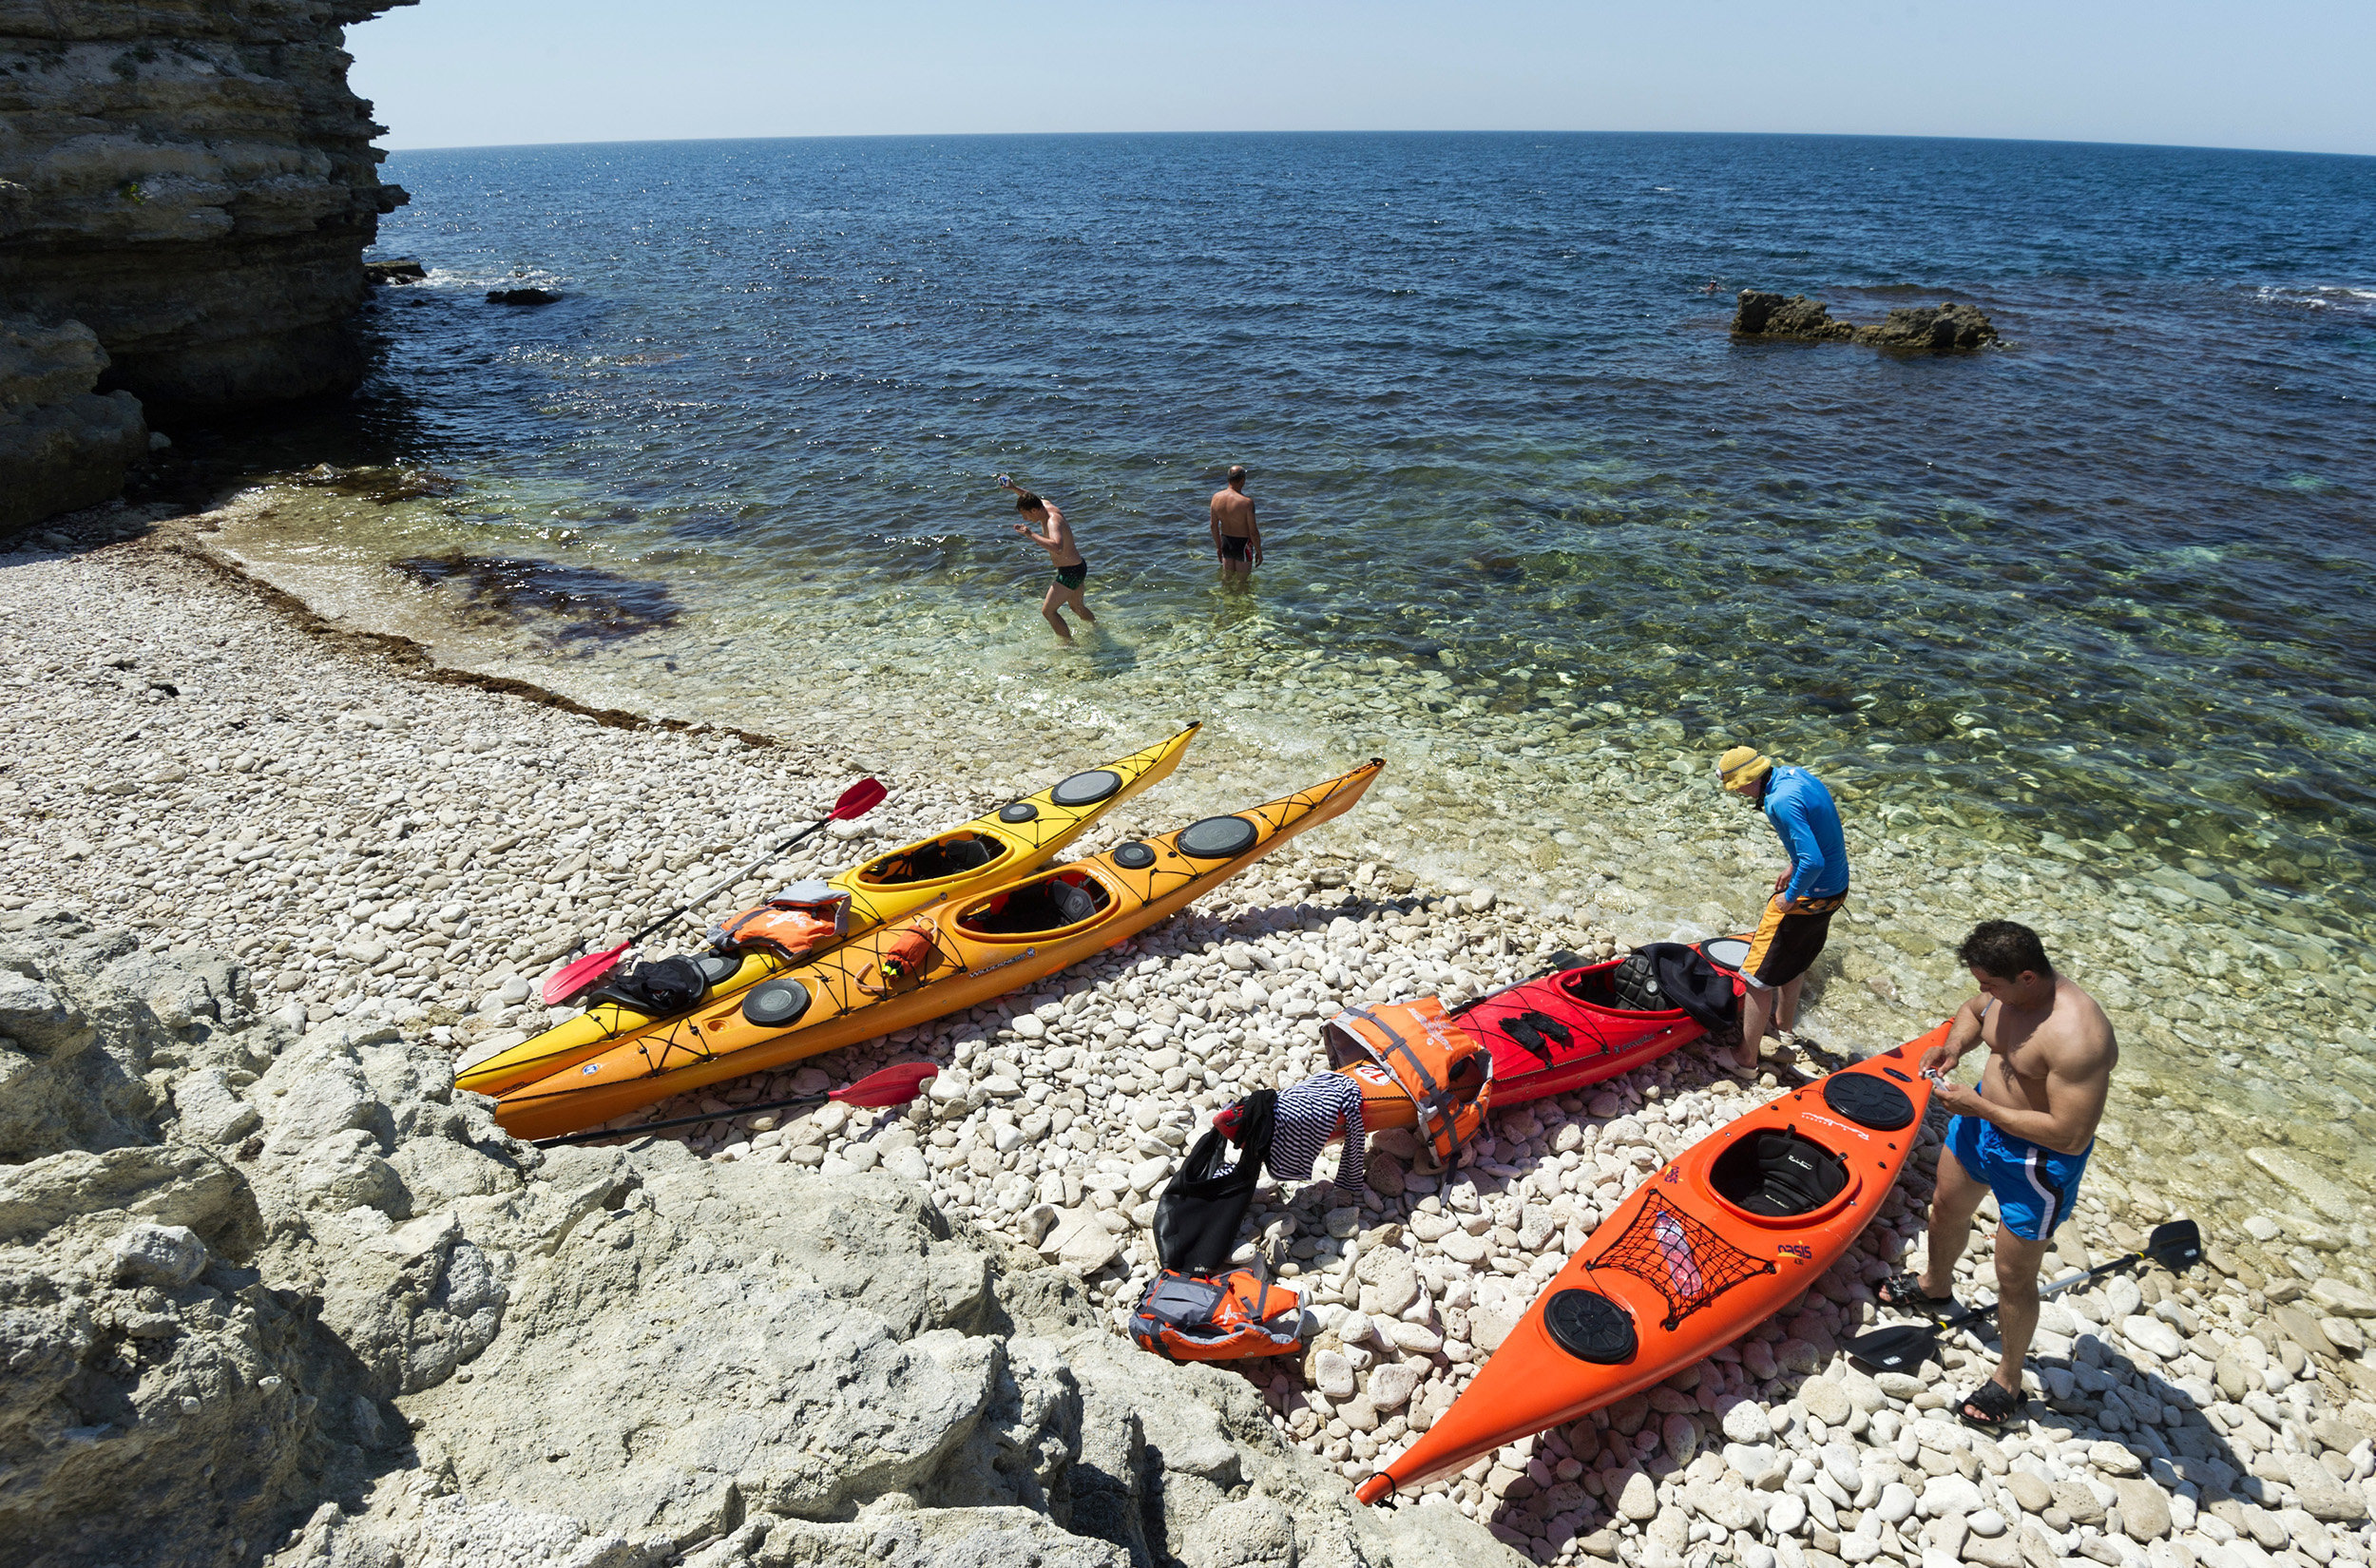 Туристы на берегу Черного моря на мысе Тарханкут в Крыму